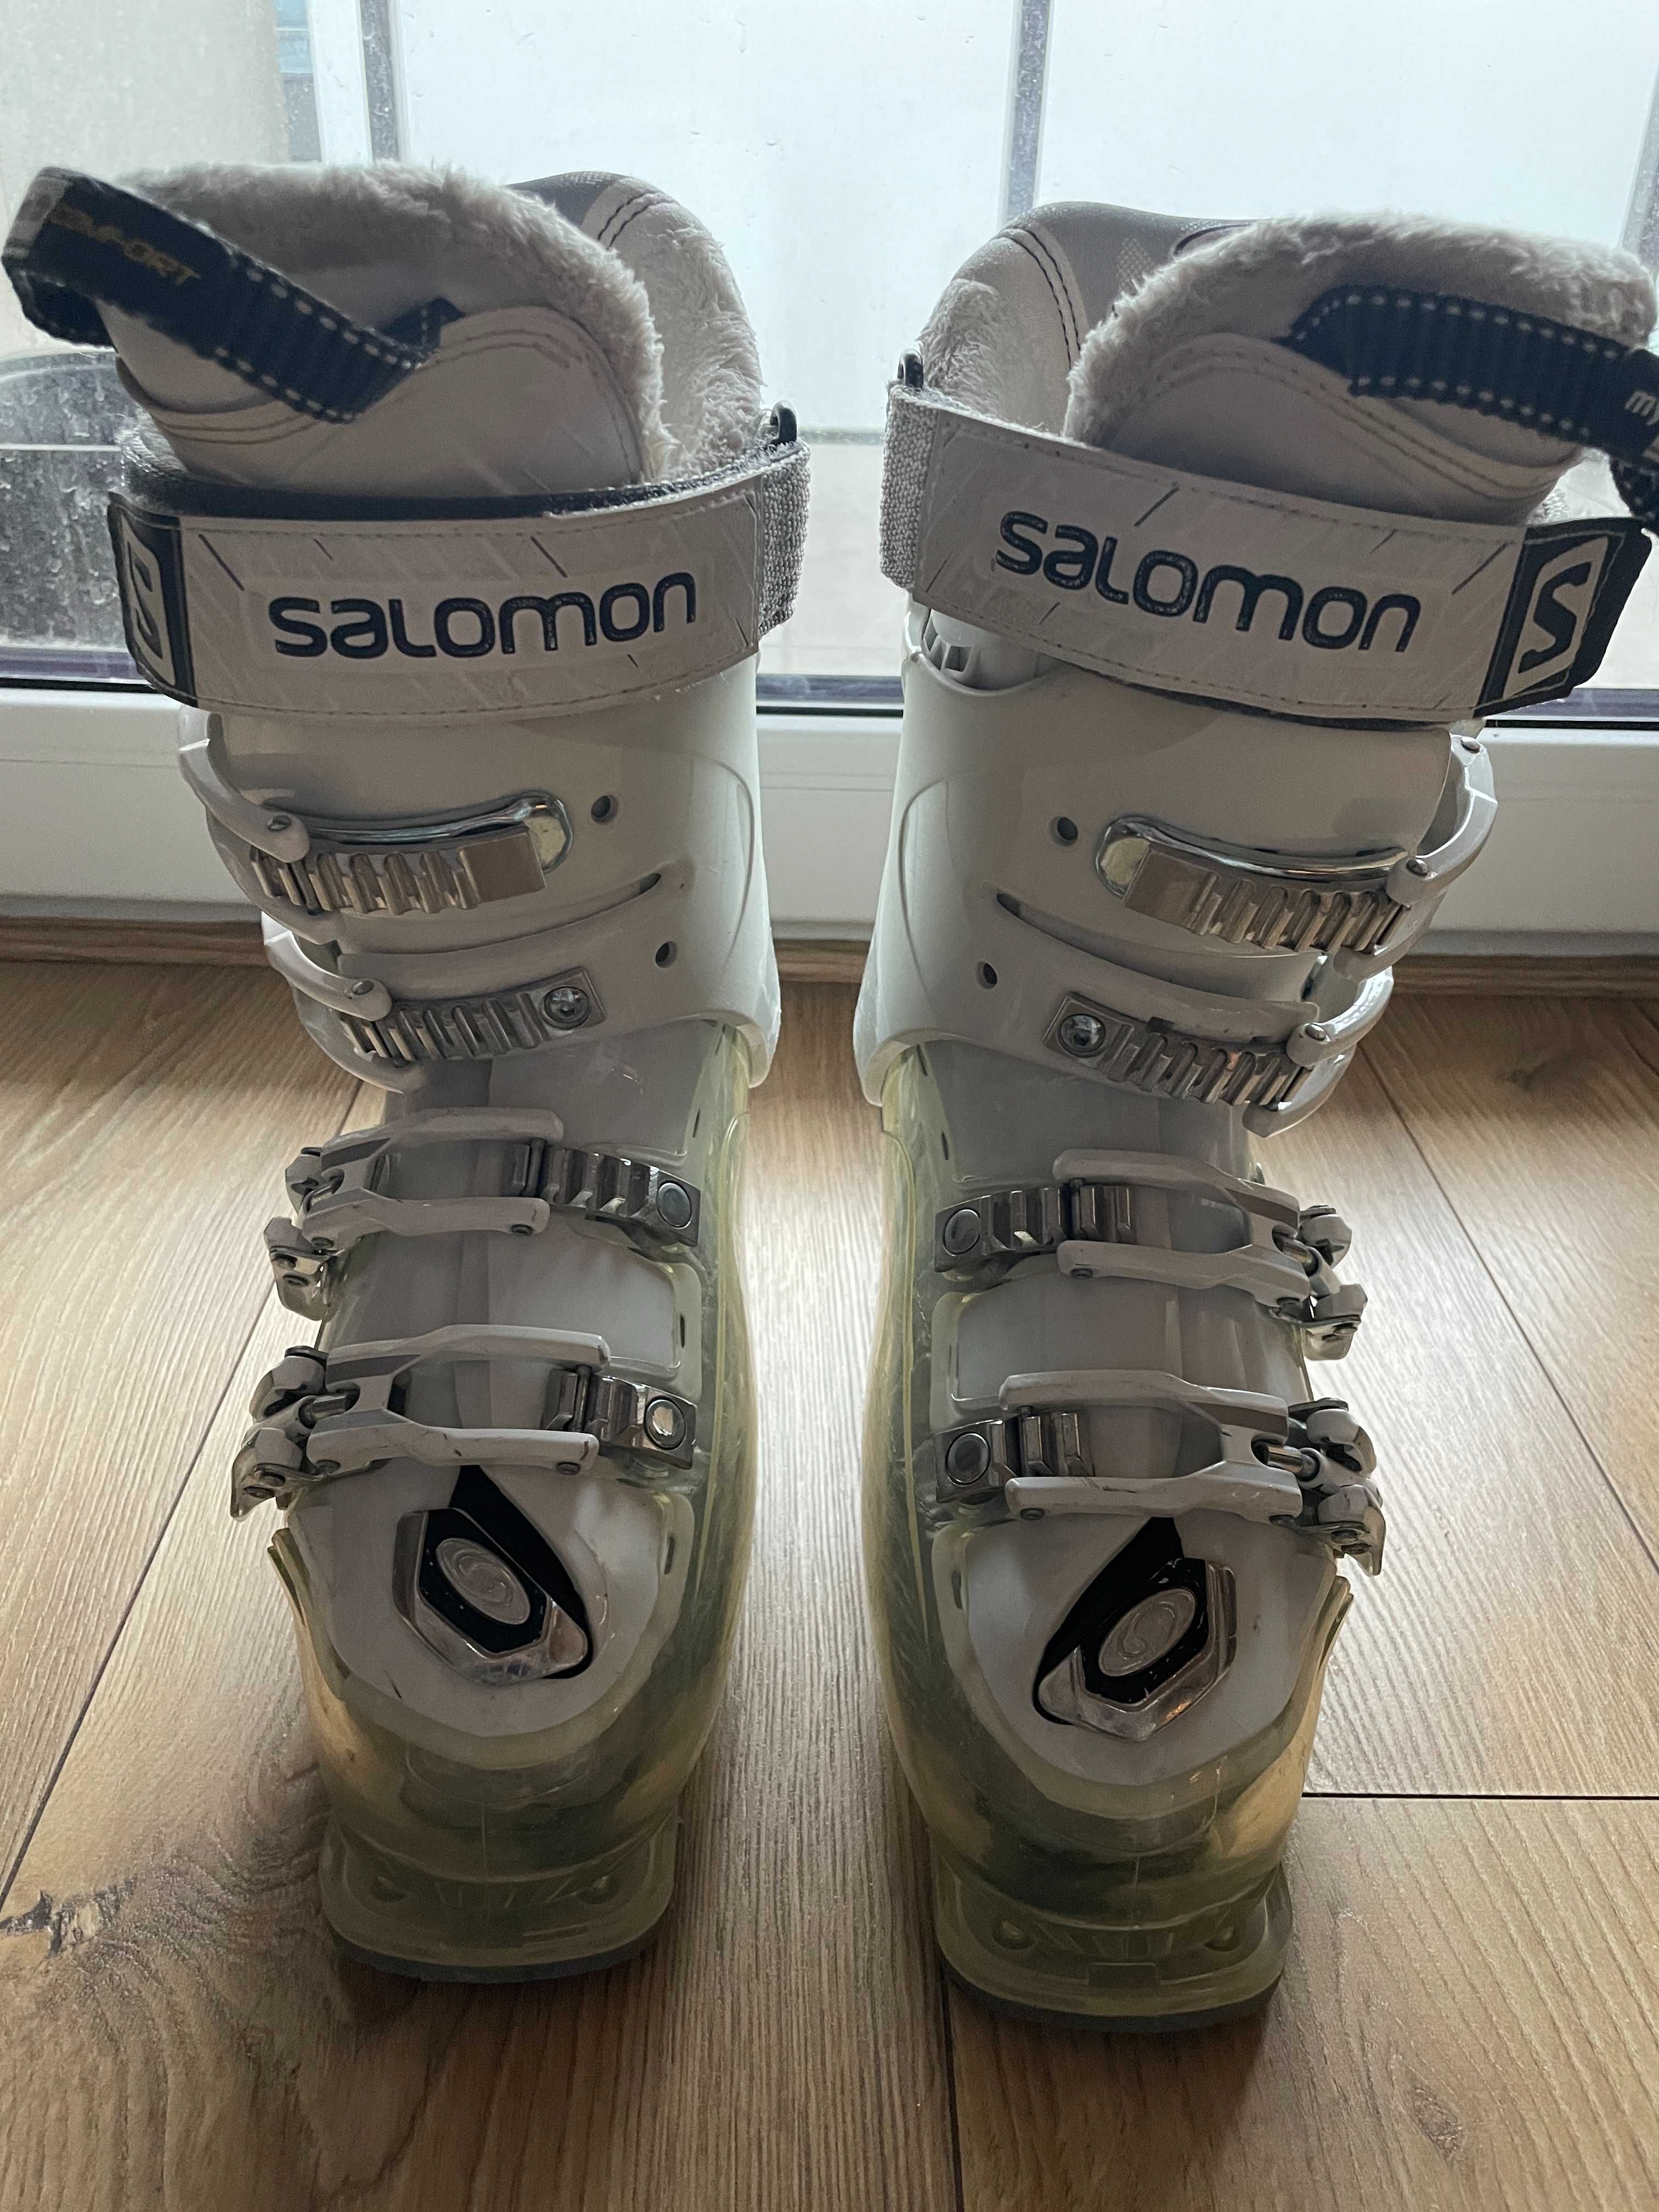 Salomon IDOL HS buty narciarskie damskie